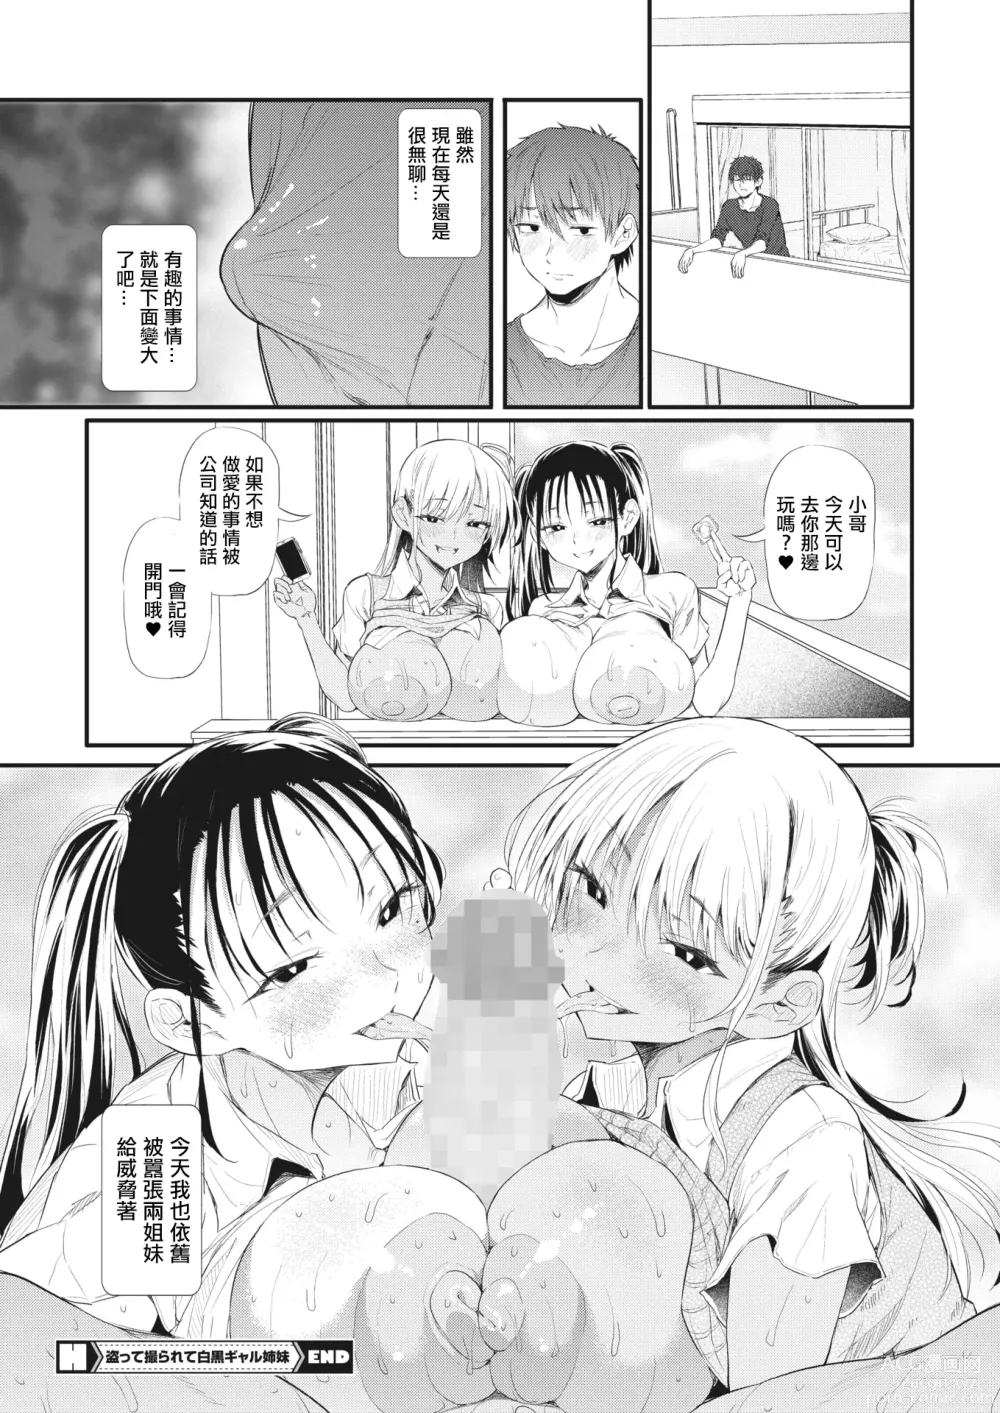 Page 28 of manga Totte Torarete  Shirokuro Gal  Shimai